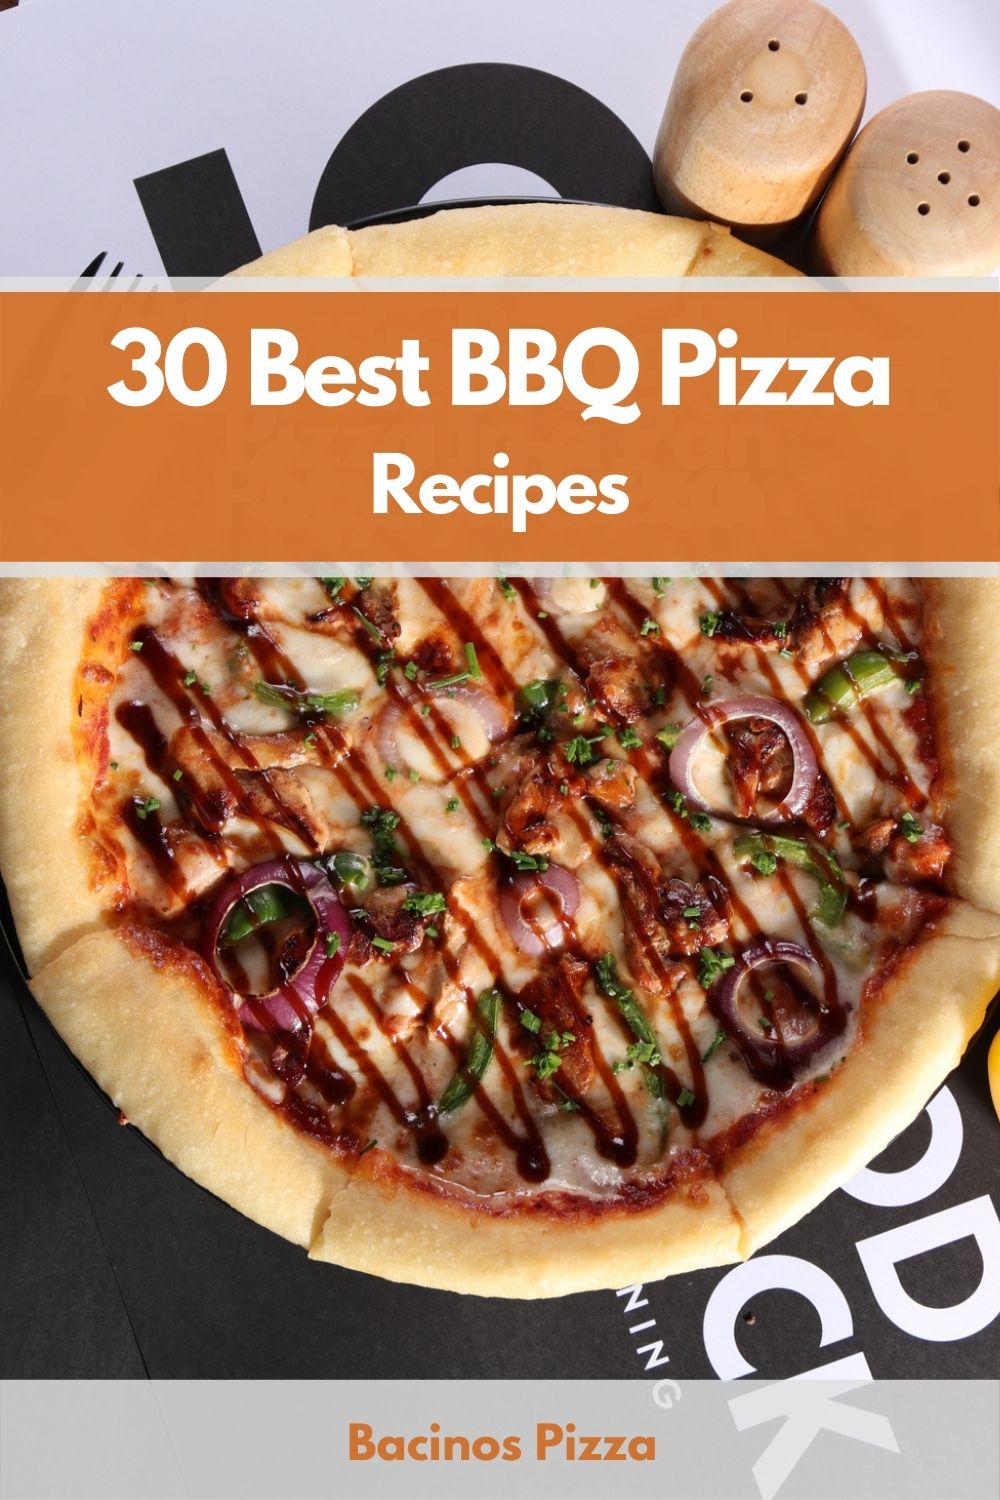 30 Best BBQ Pizza Recipes pin